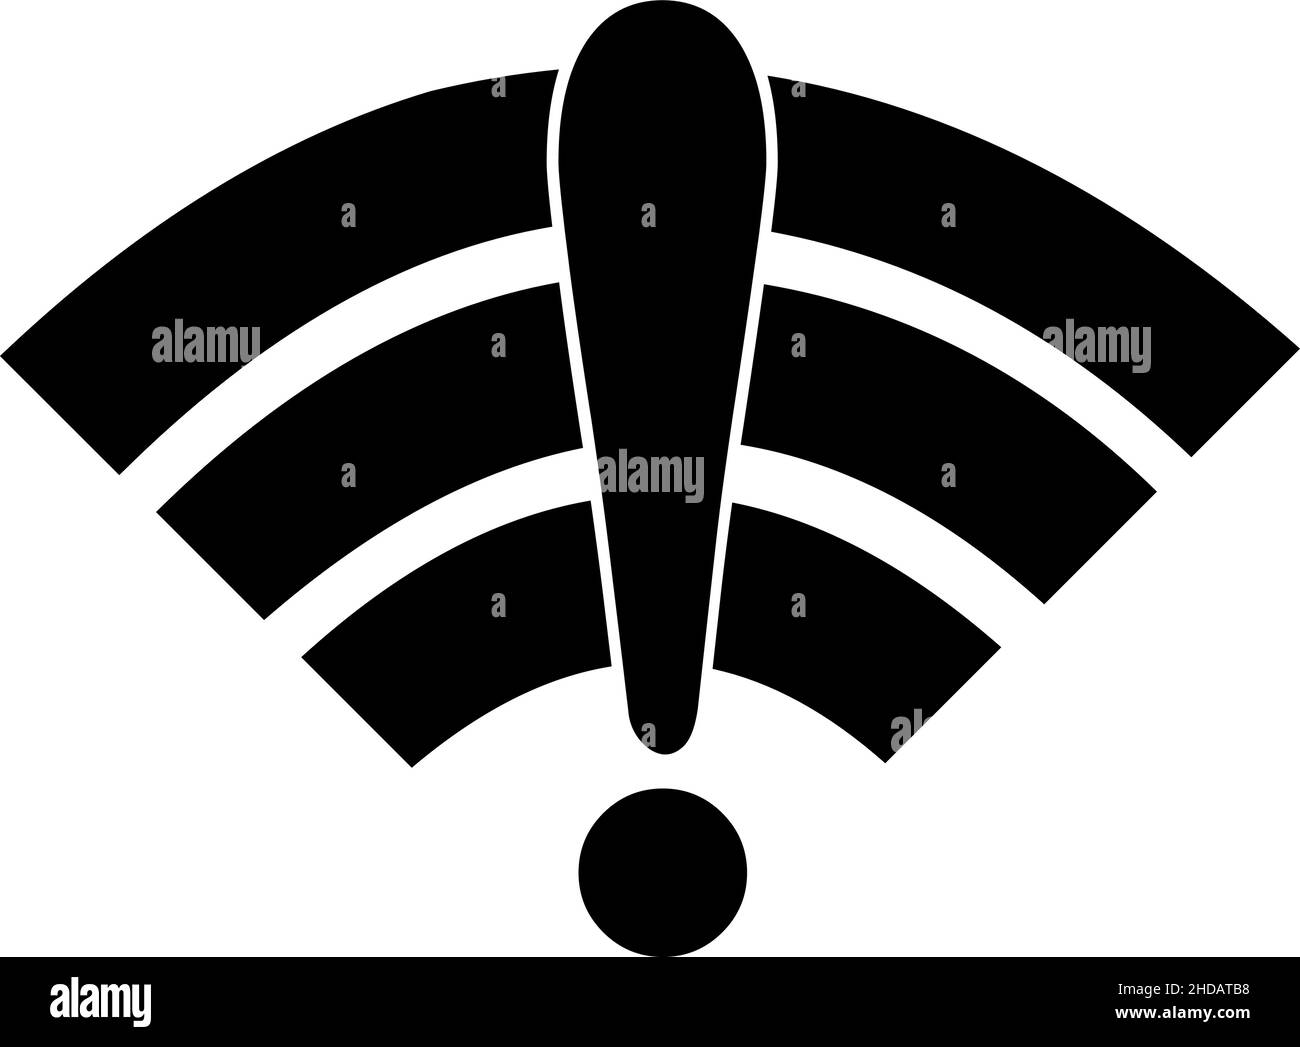 Ilustración vectorial del icono o símbolo de wi-fi con un signo de exclamación, en concepto de Internet desconectado o señal baja Ilustración del Vector